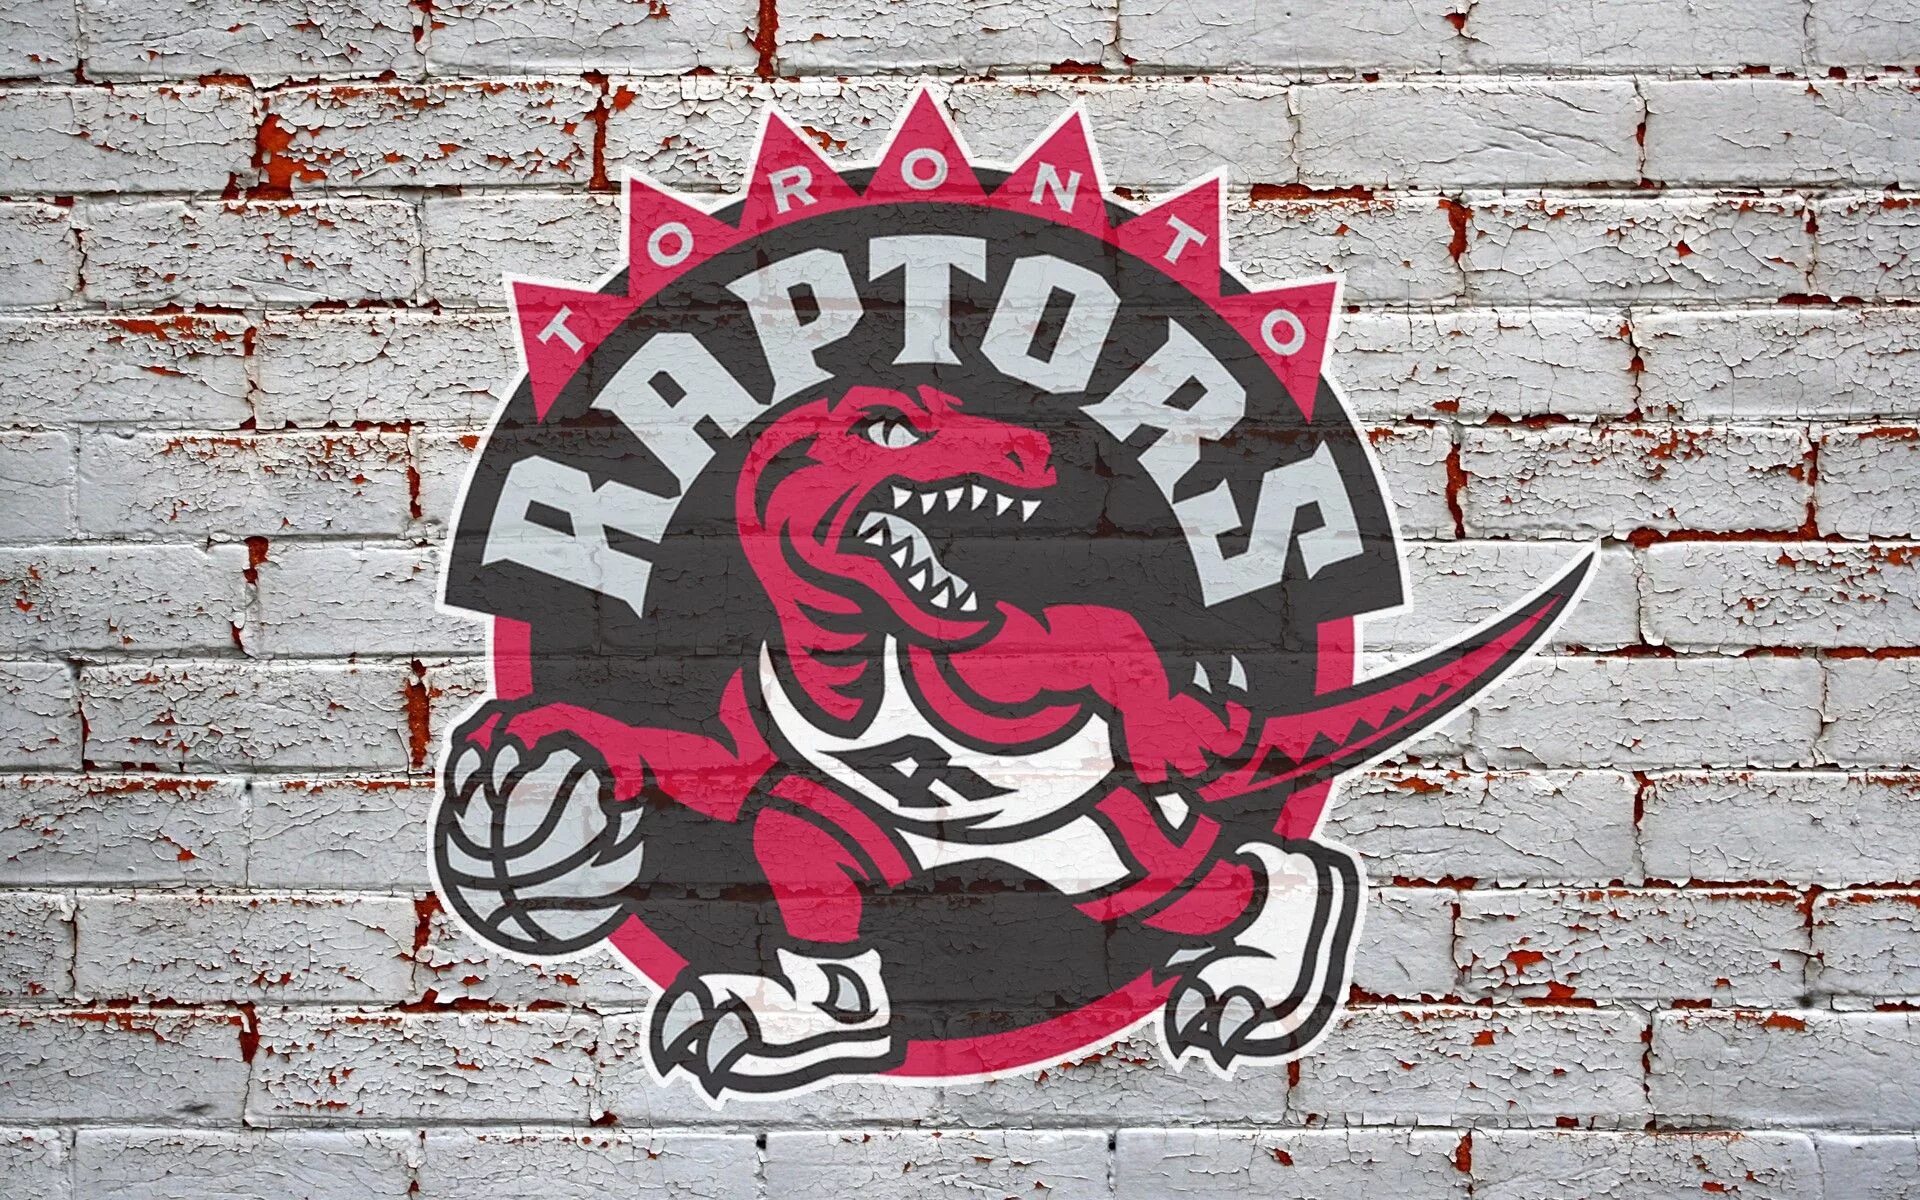 Toronto raptors. Команда Toronto Raptors. Торонто Рэпторс эмблема. Торонто Рэпторс 2006 эмблема. Toronto Raptors лого.